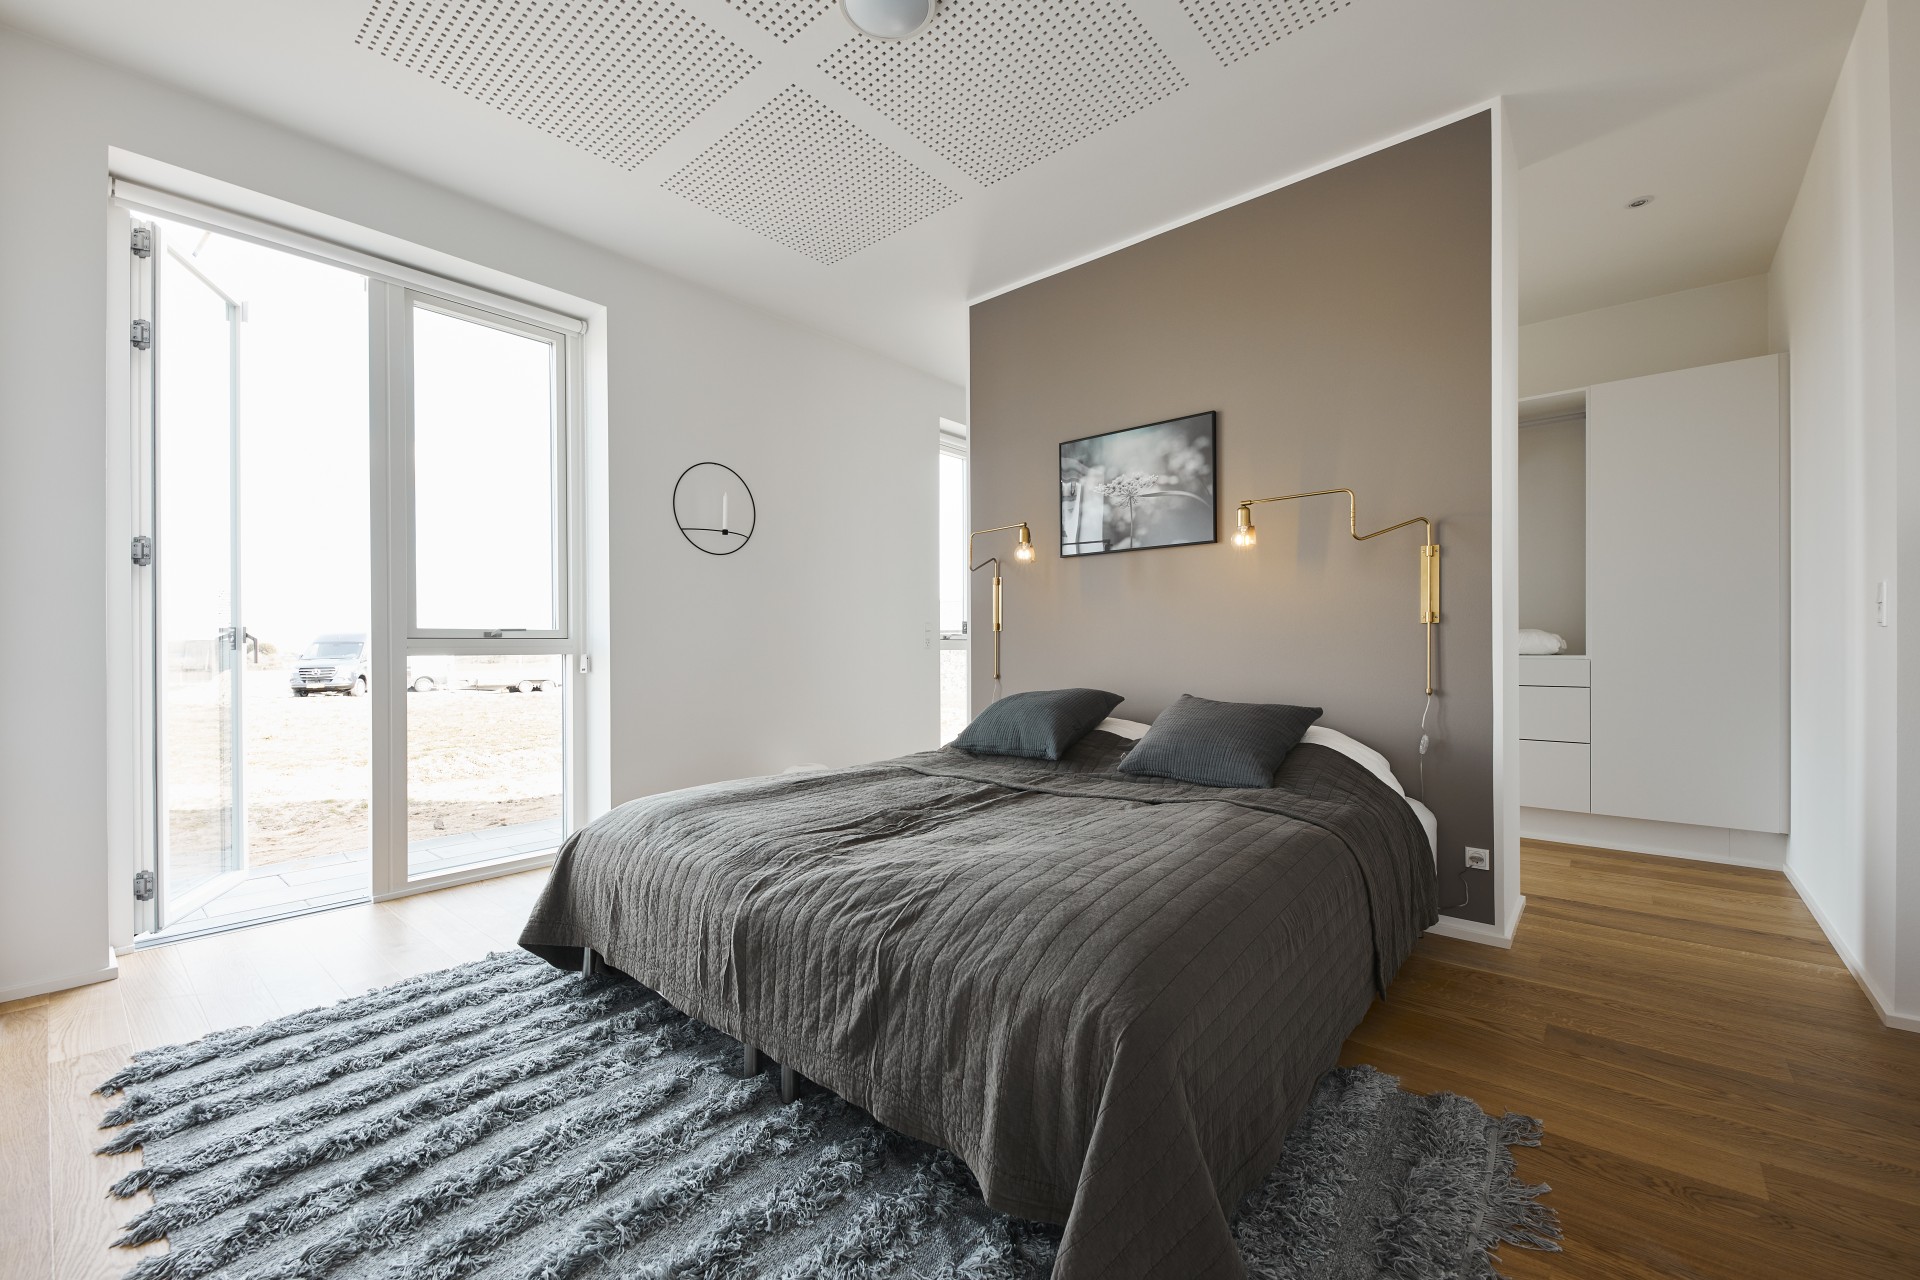 Inspiration til farver i hjemmet: Soveværelse med en støvbrun væg.